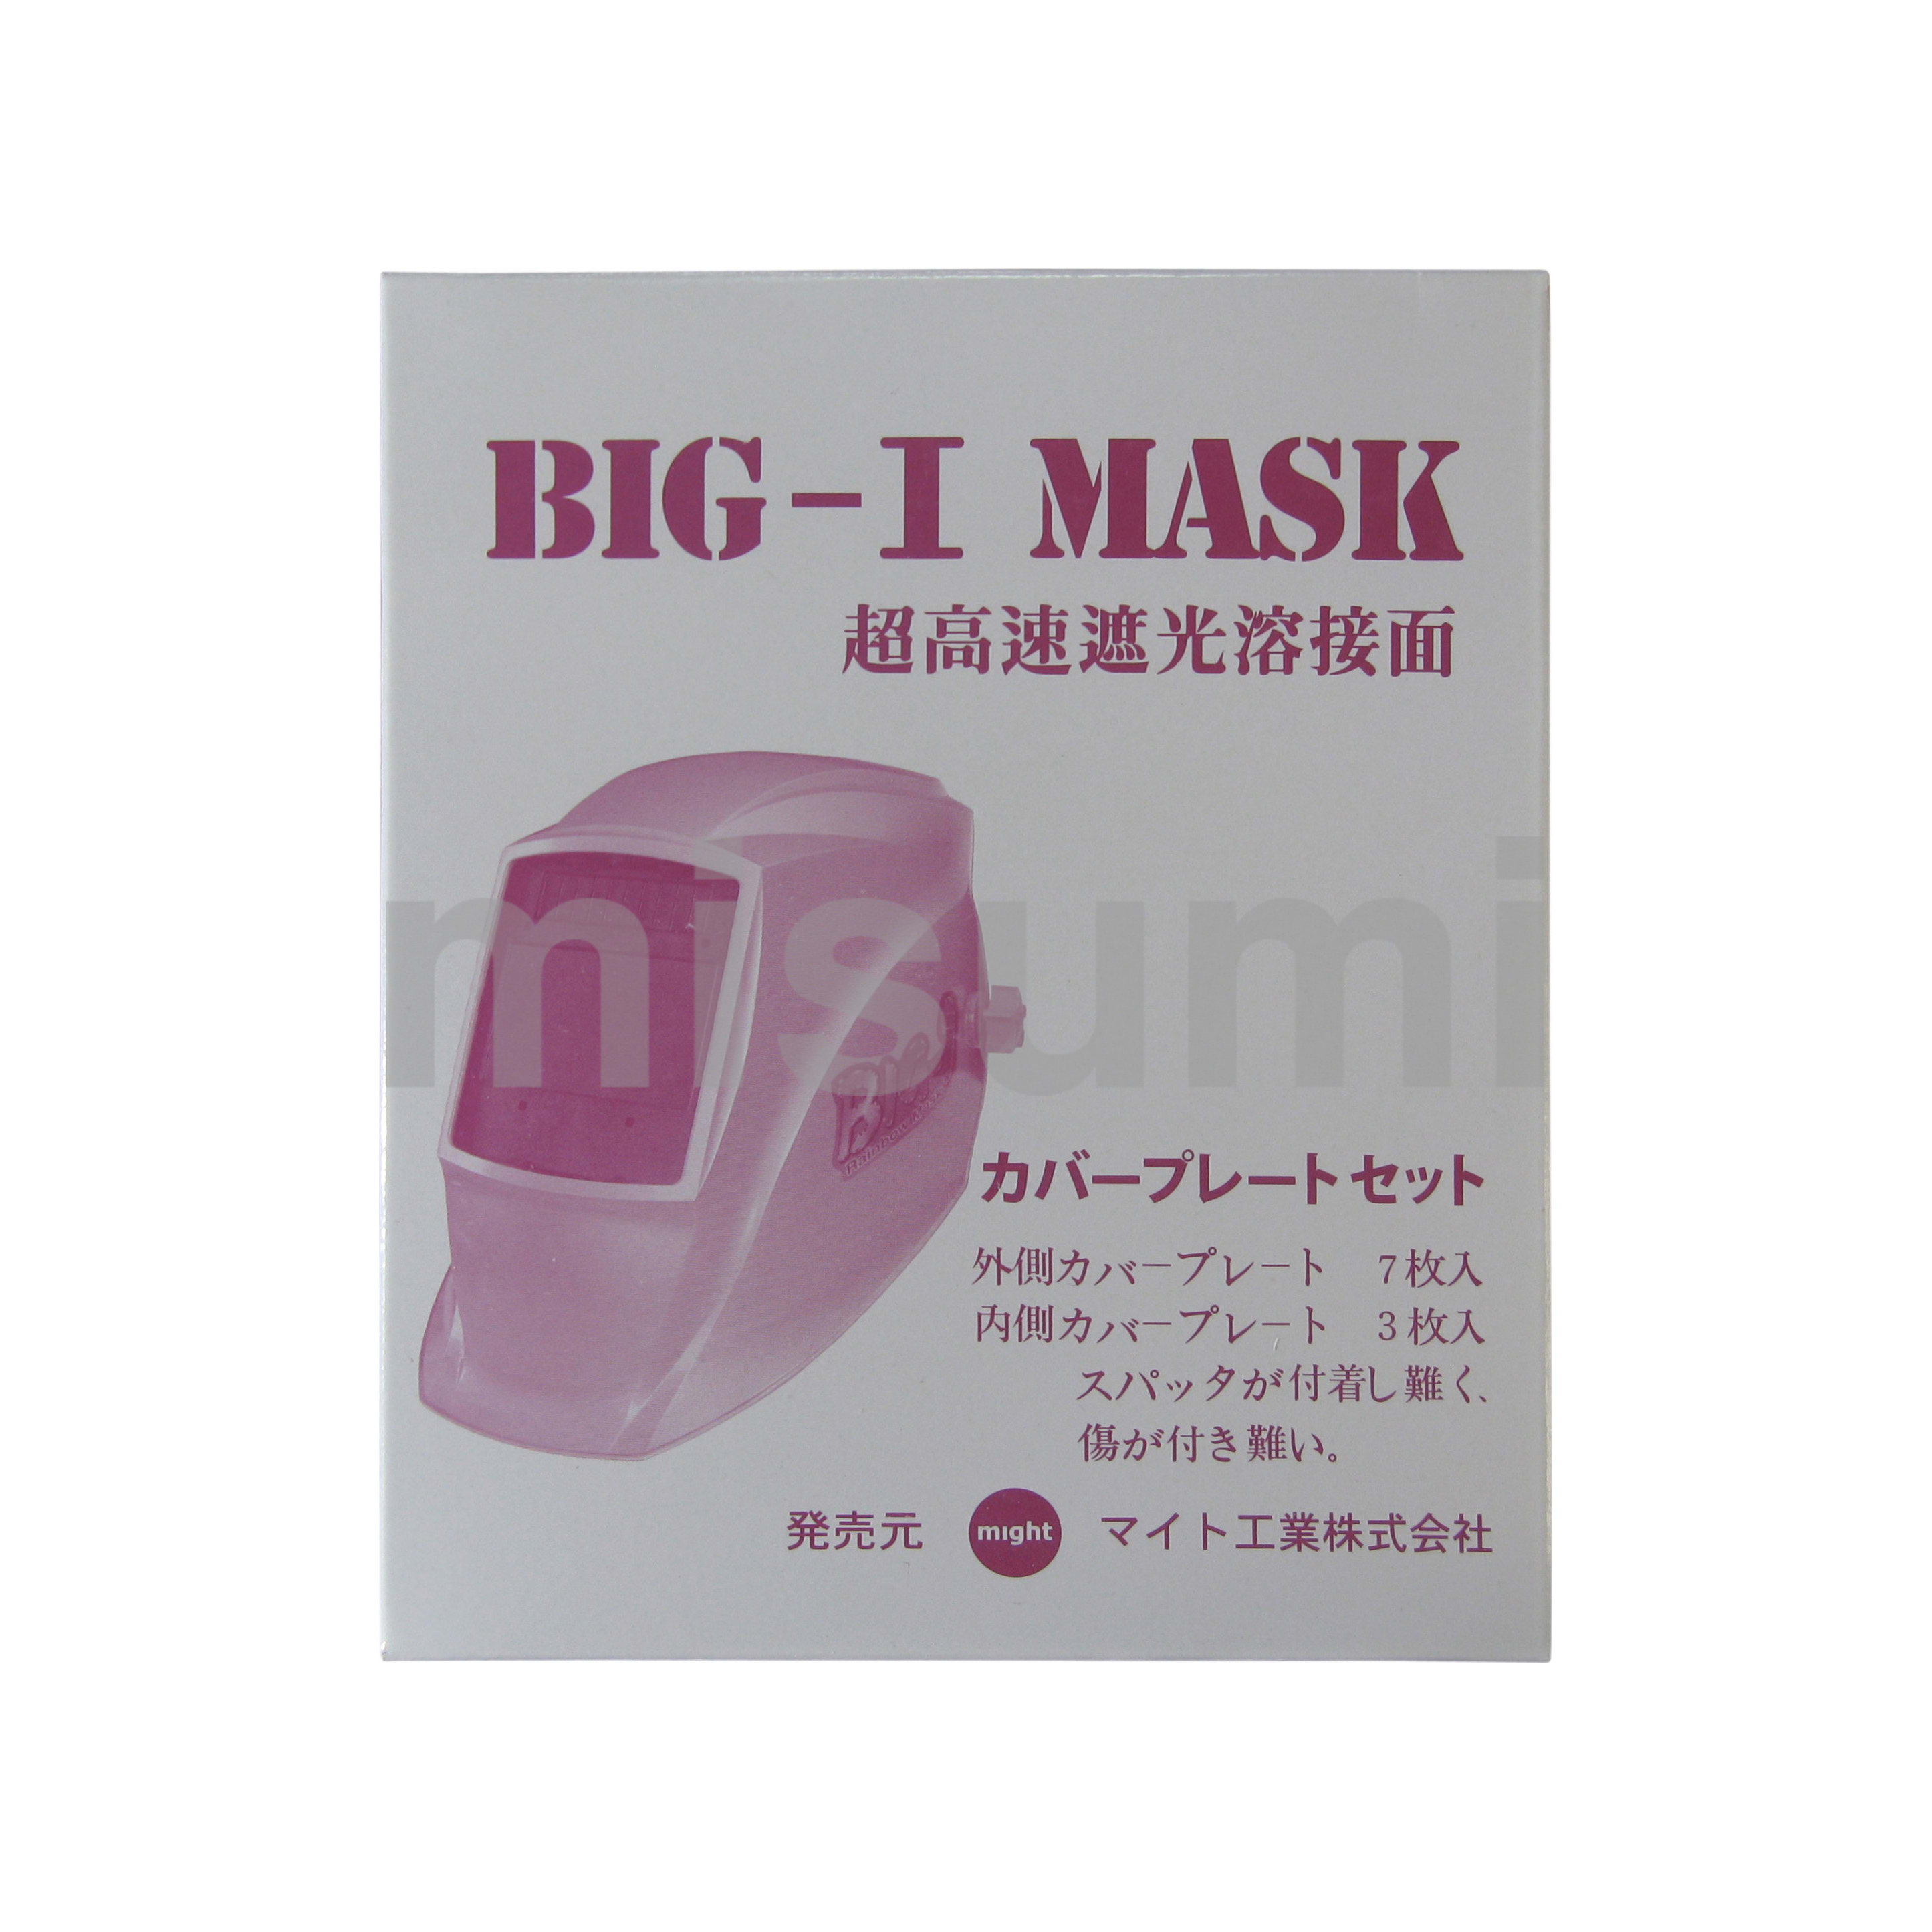 CVP-900S 溶接面 レインボーマスクシリーズ用カバープレート マイト工業 MISUMI(ミスミ)